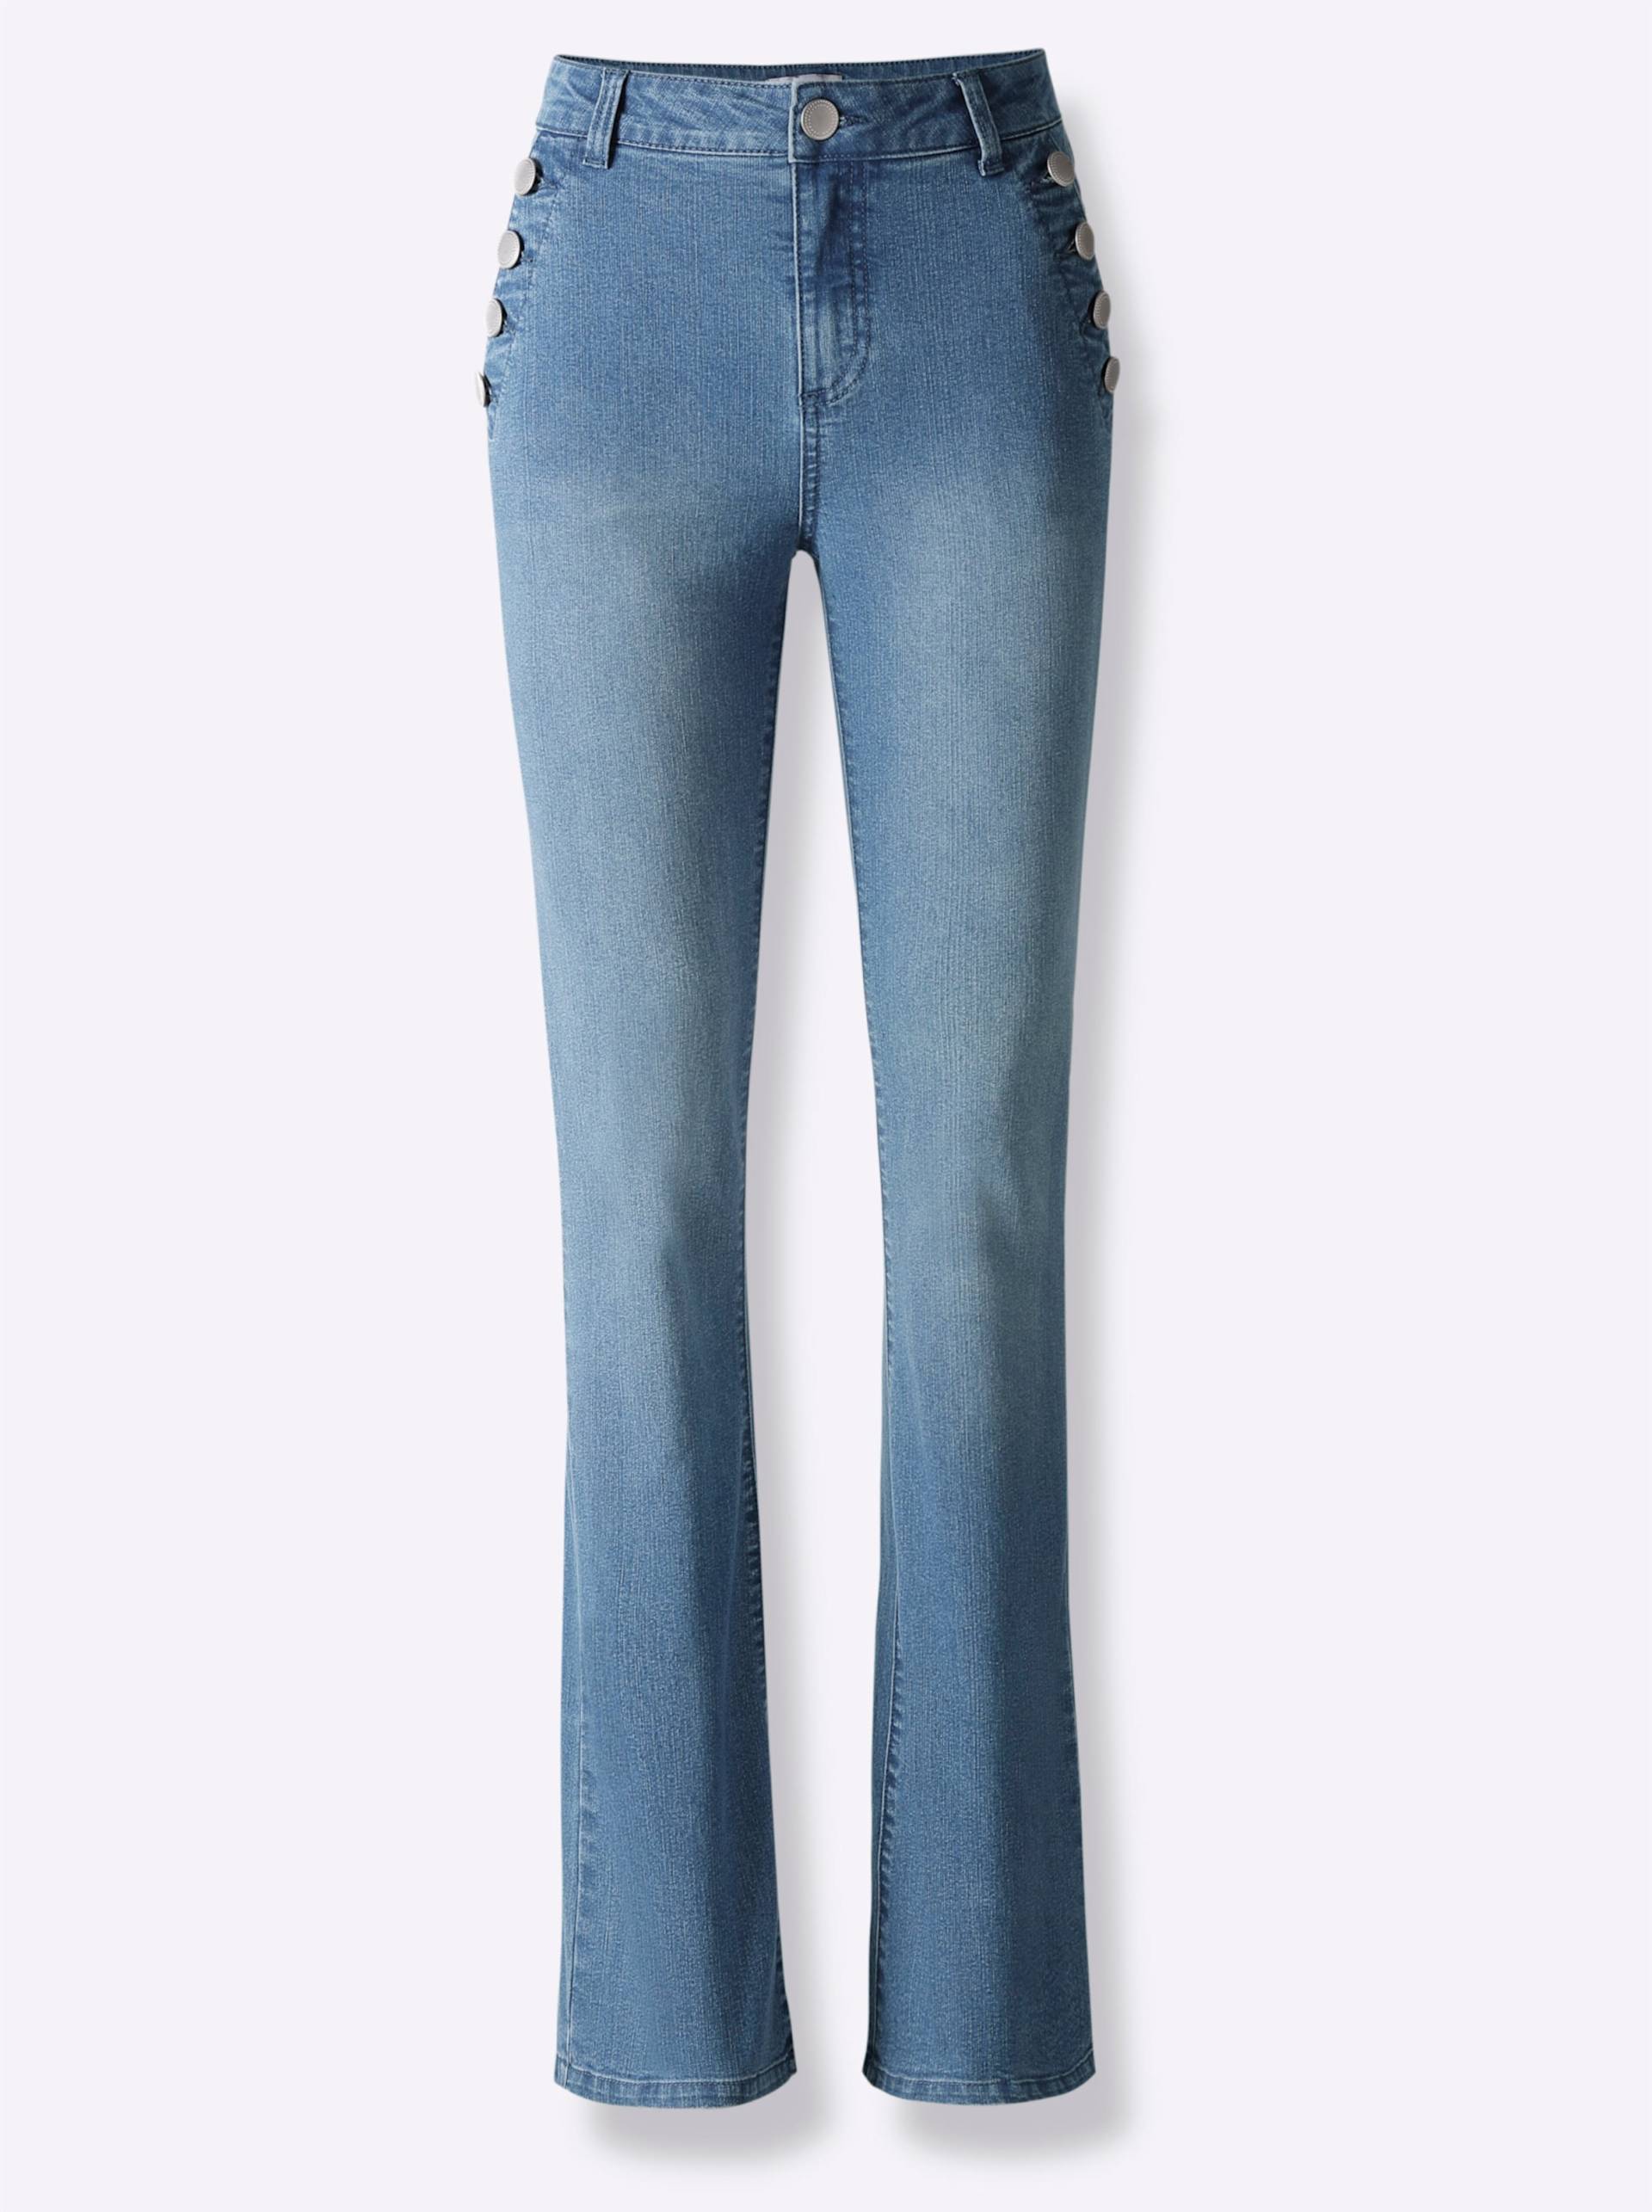 Bootcut-Jeans in blue-bleached von heine